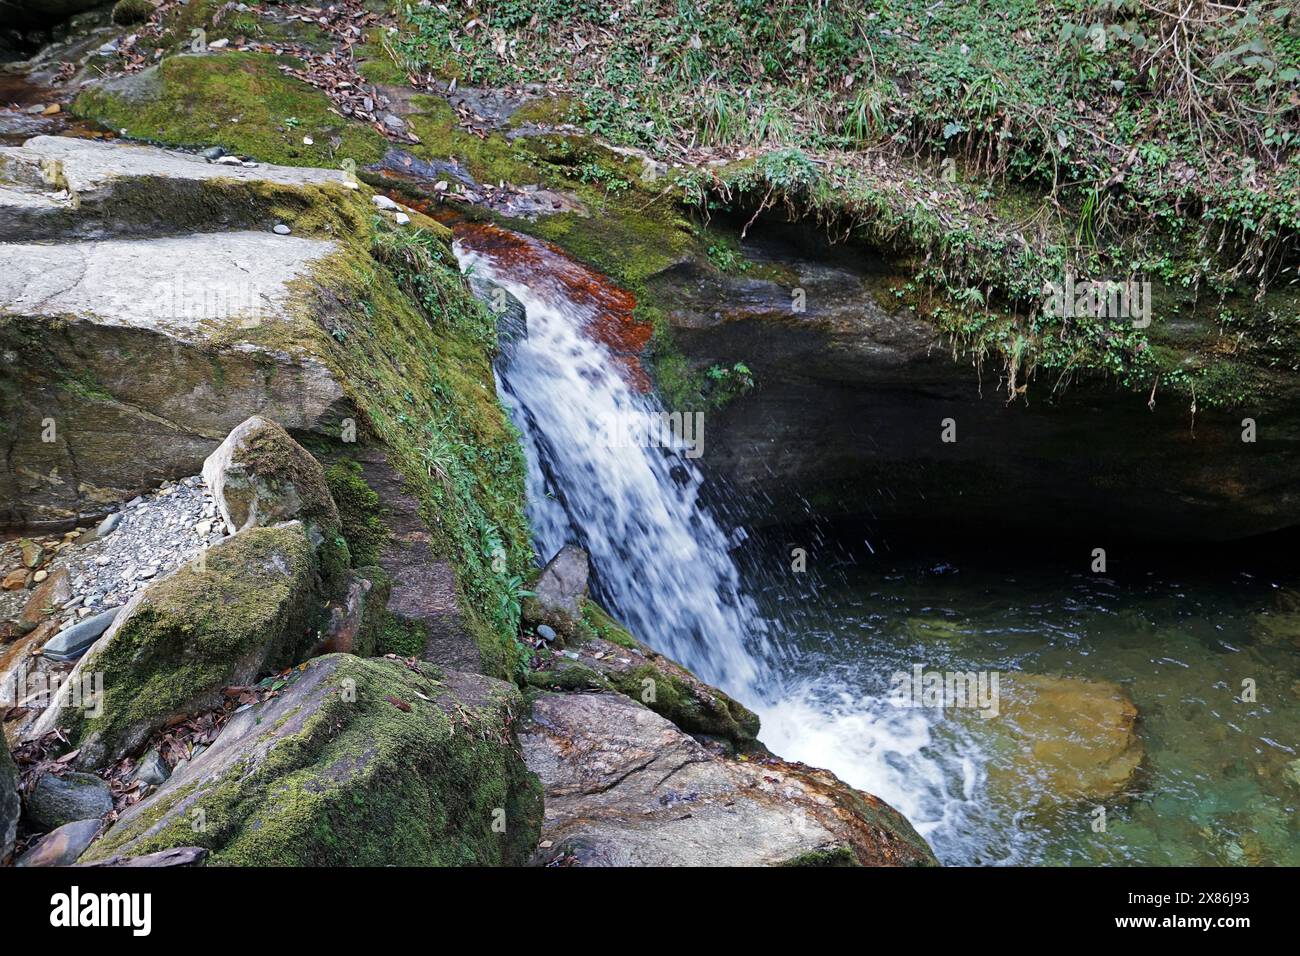 Natürliche Landschaft mit felsigem Wasserfall inmitten eines grünen Regenwaldparks Stockfoto